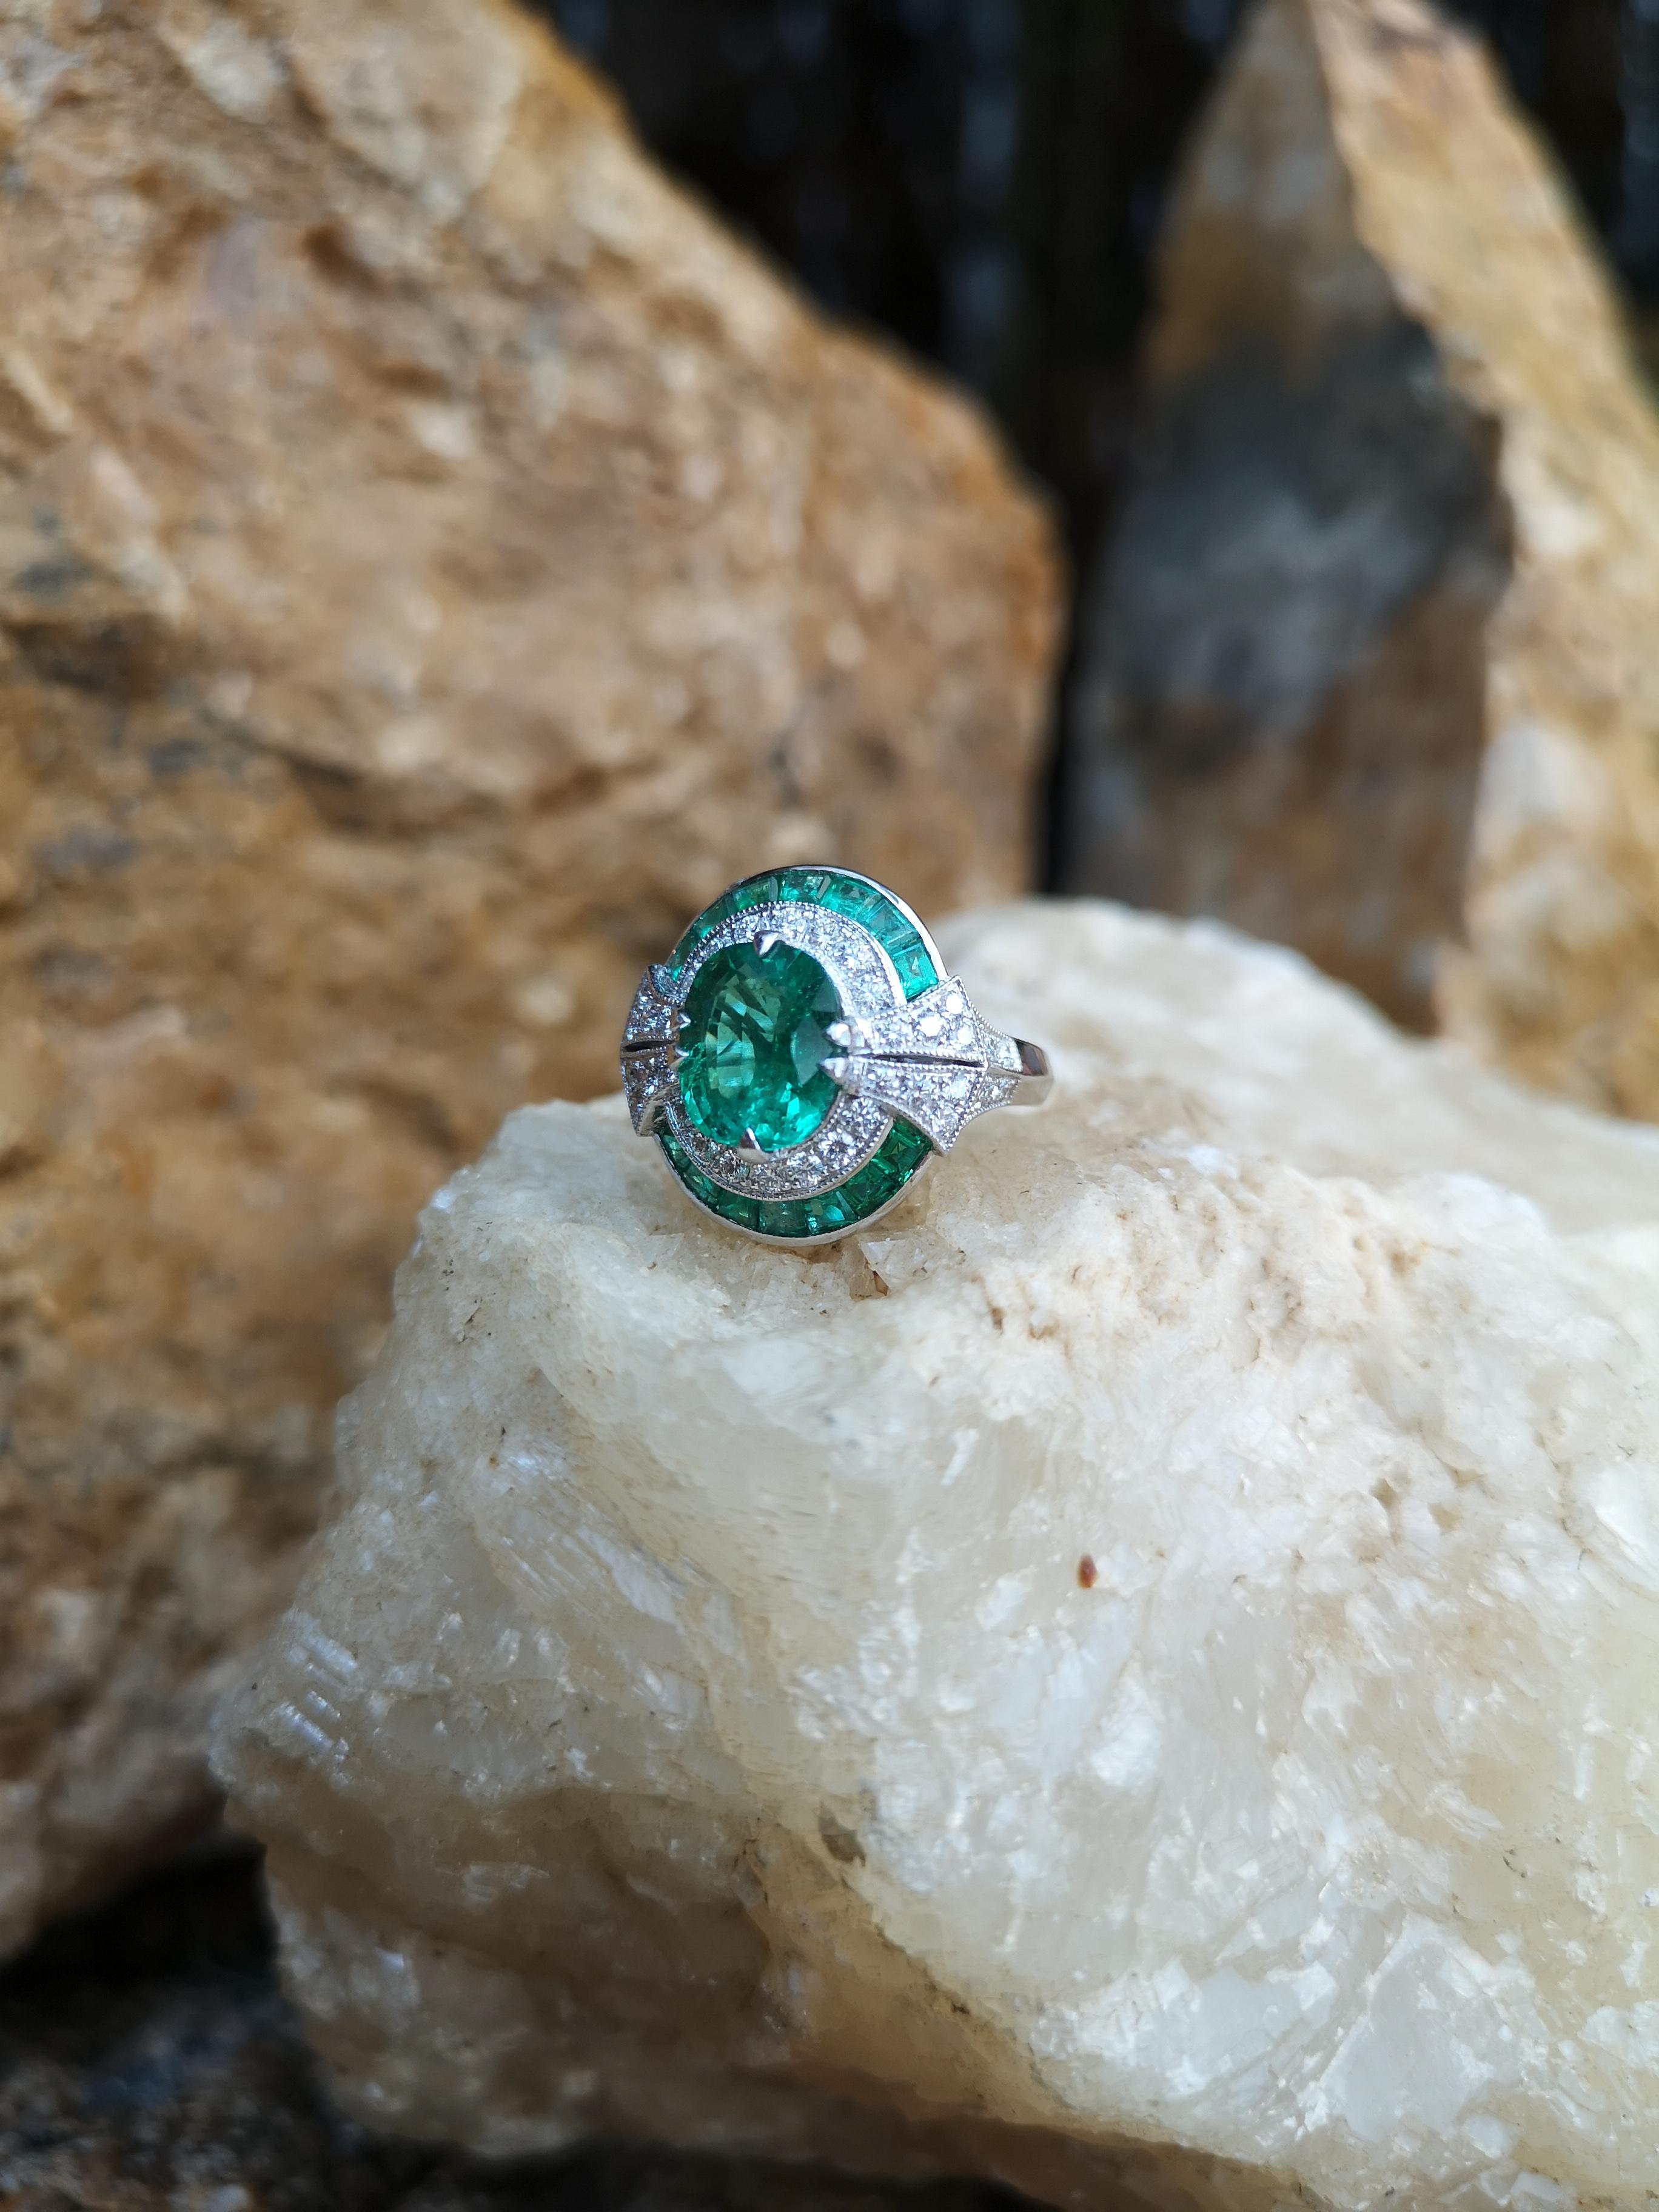 Smaragd 2,44 Karat, Smaragd 1,15 Karat mit Diamant 0,64 Karat Ring in 18 Karat Weißgold gefasst 

Breite: 1,8 cm
Länge: 1,8 cm 
Ringgröße: 50

